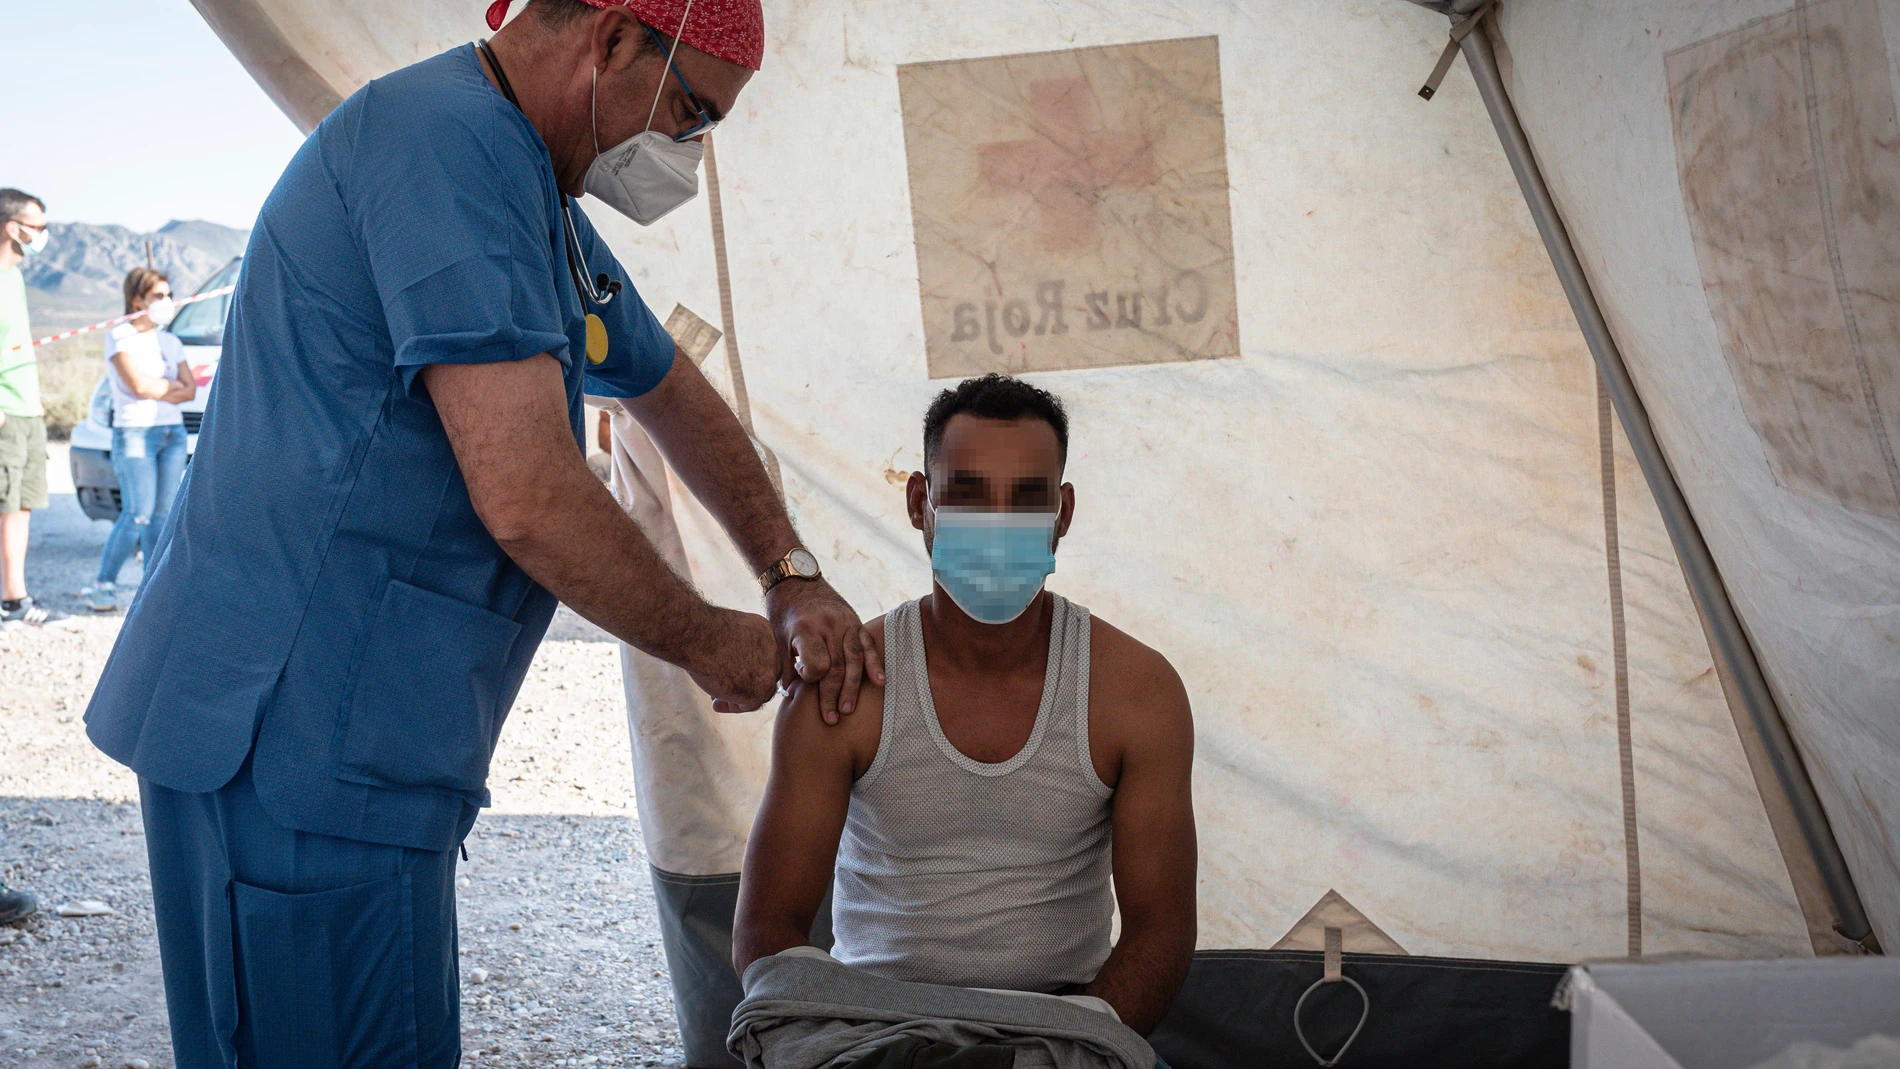 Un jornalero recibe la vacuna en un dispositivo a cargo de Cáritas y Cruz Roja, en un asentamiento de Níjar, Almería